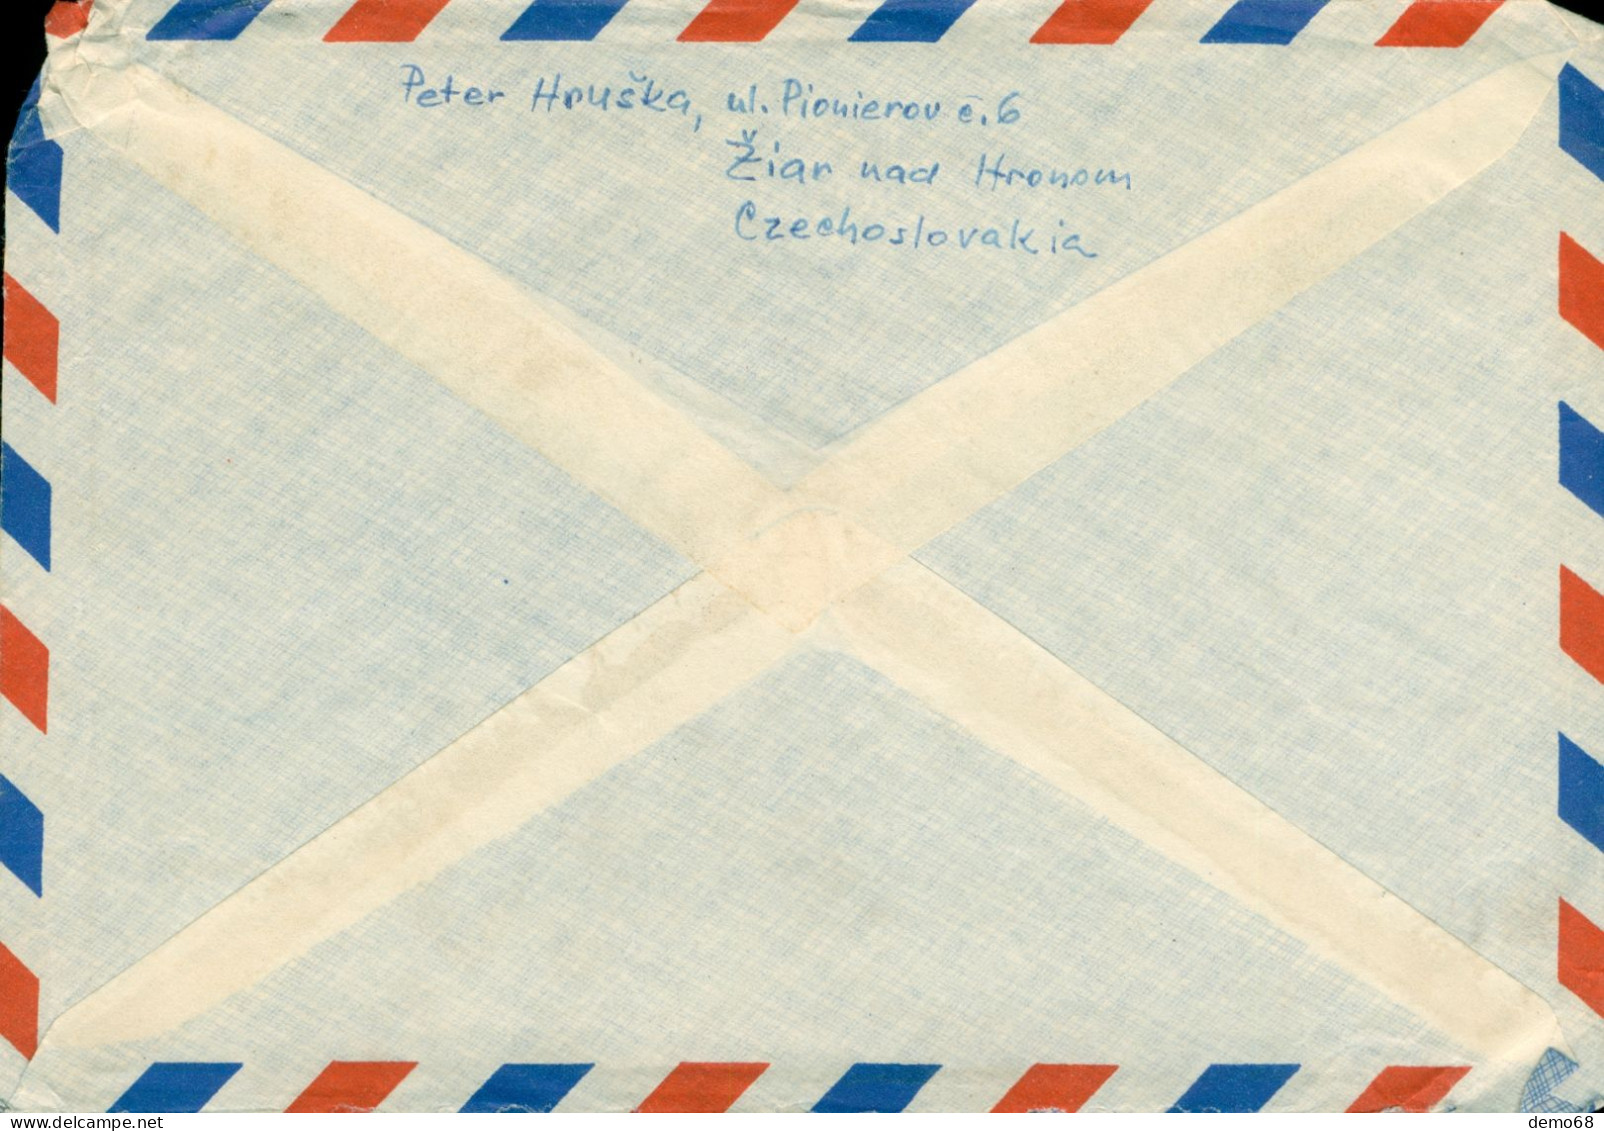 Tchécoslovaquie Ceskoslovensko 1959 ?? Timbre Sur Enveloppe Poste Aérienne  Air Mail  Bon état - Poste Aérienne